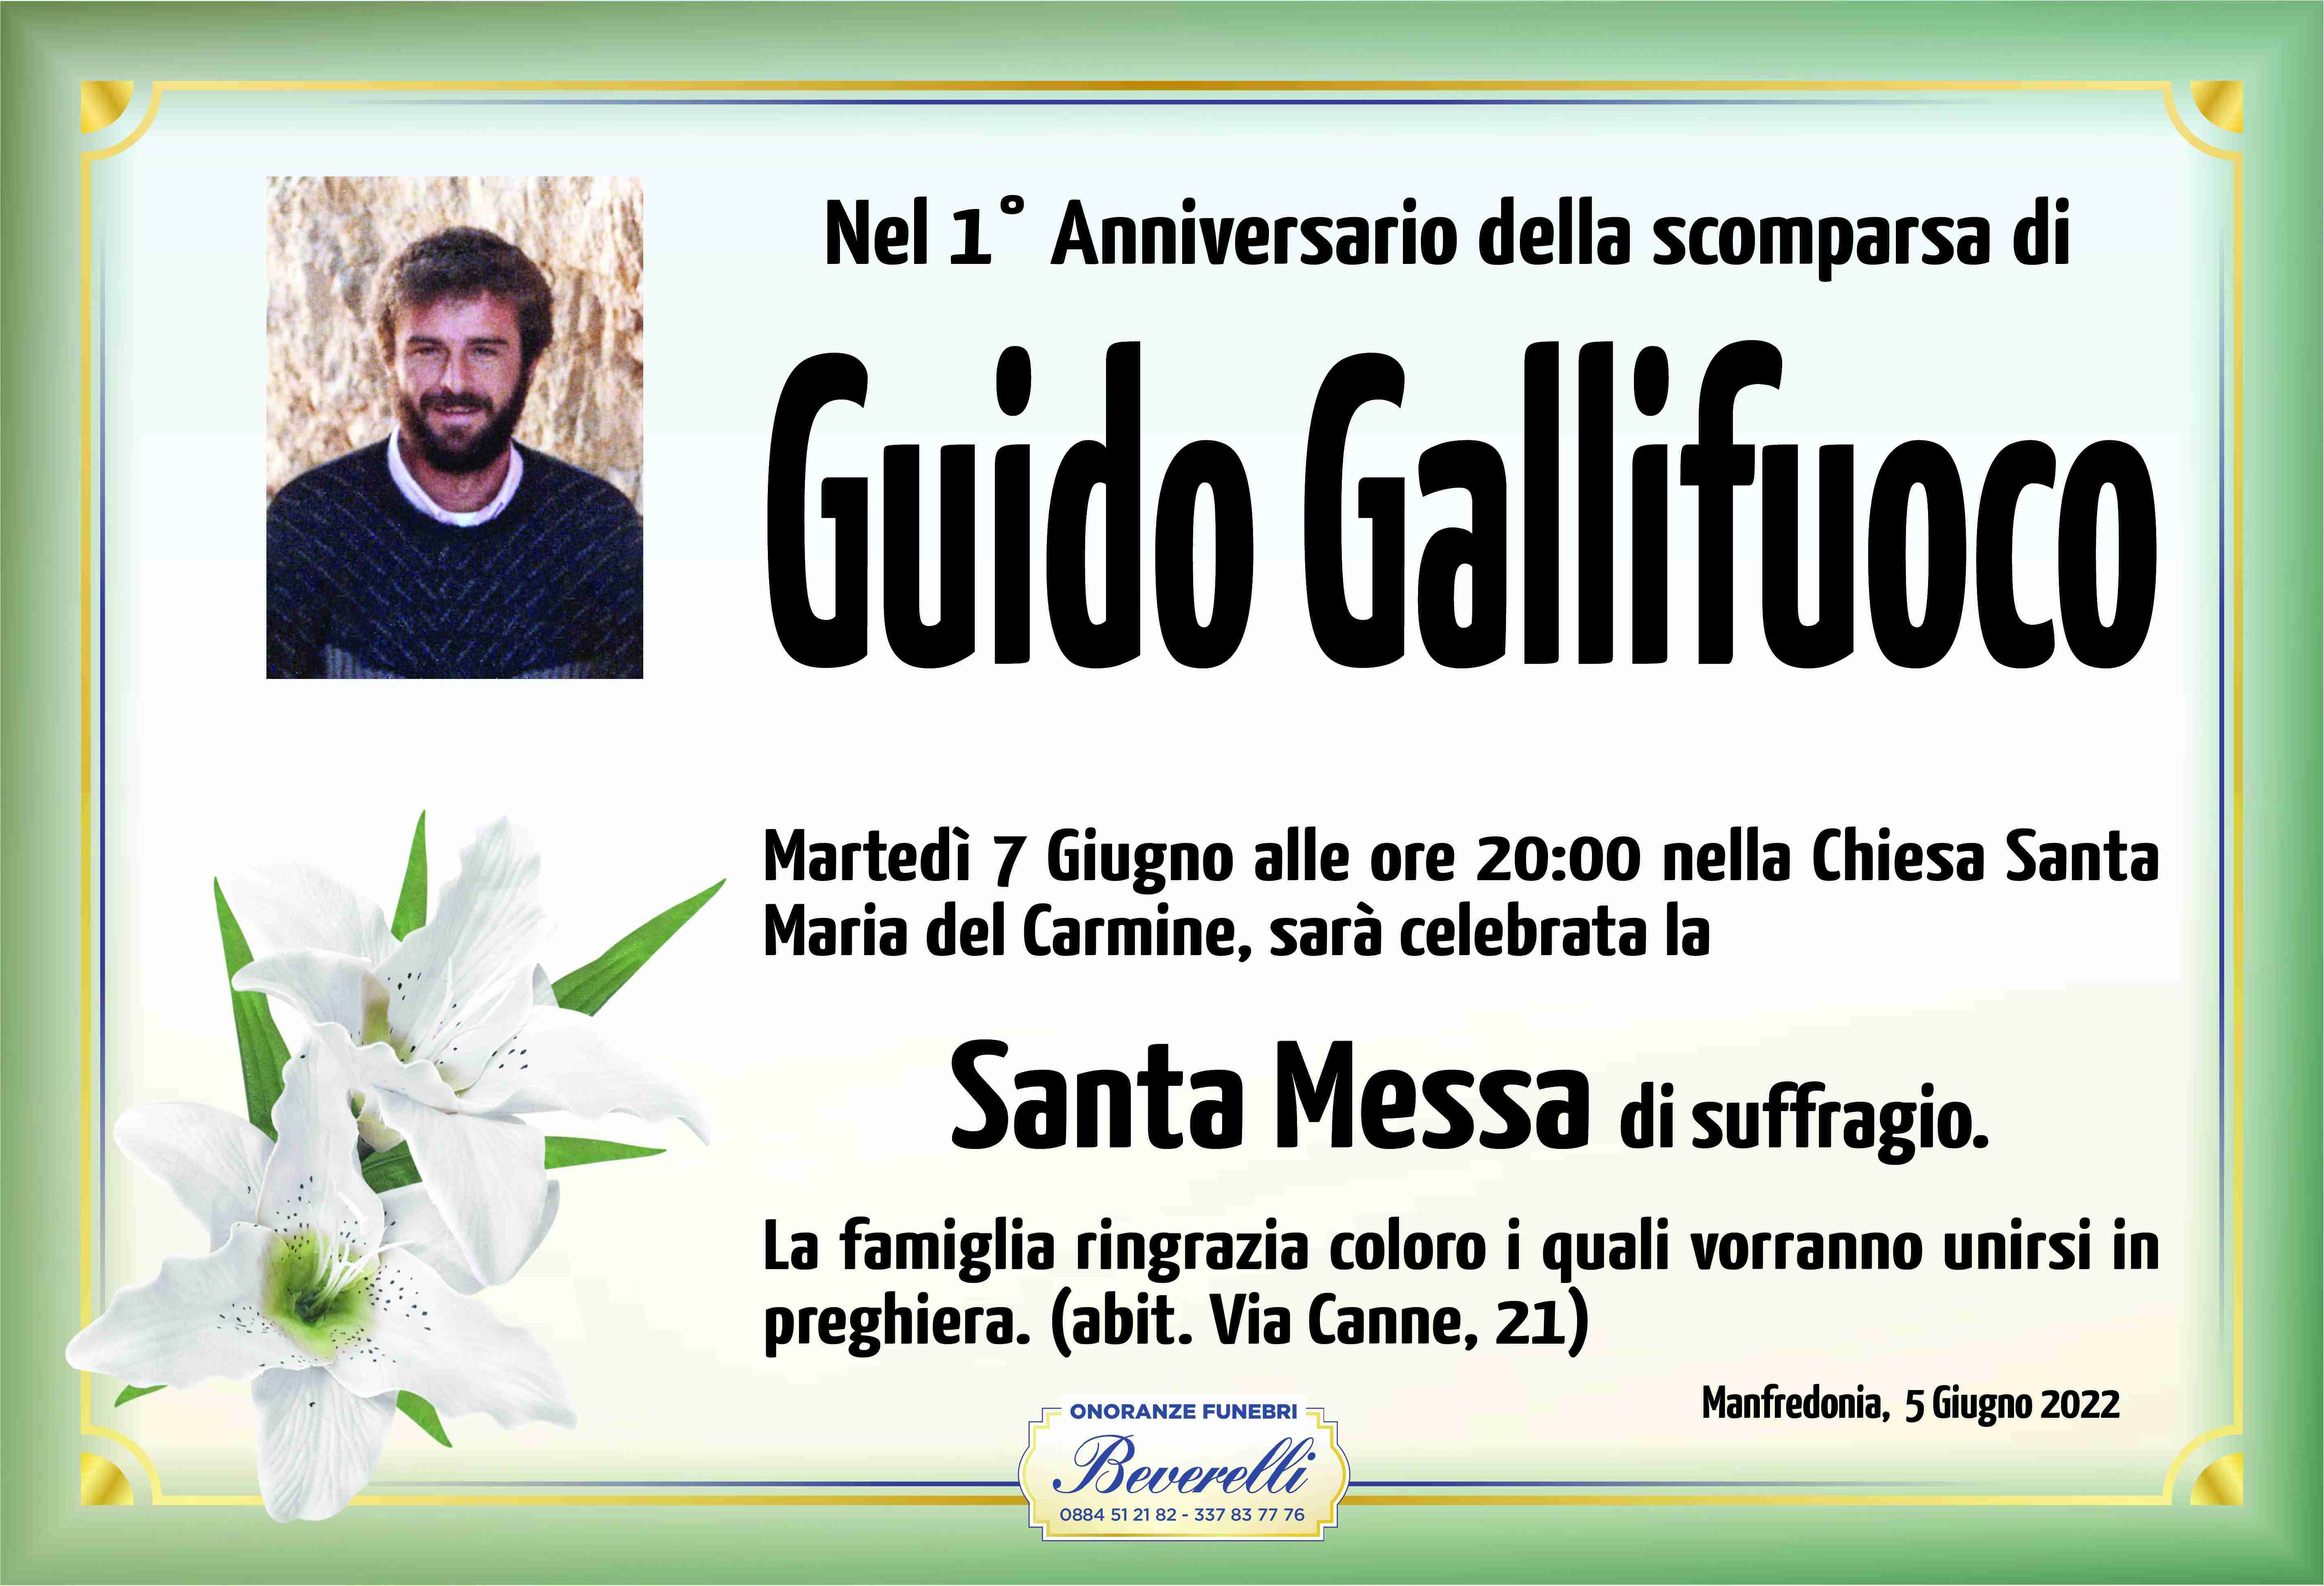 Guido Gallifuoco